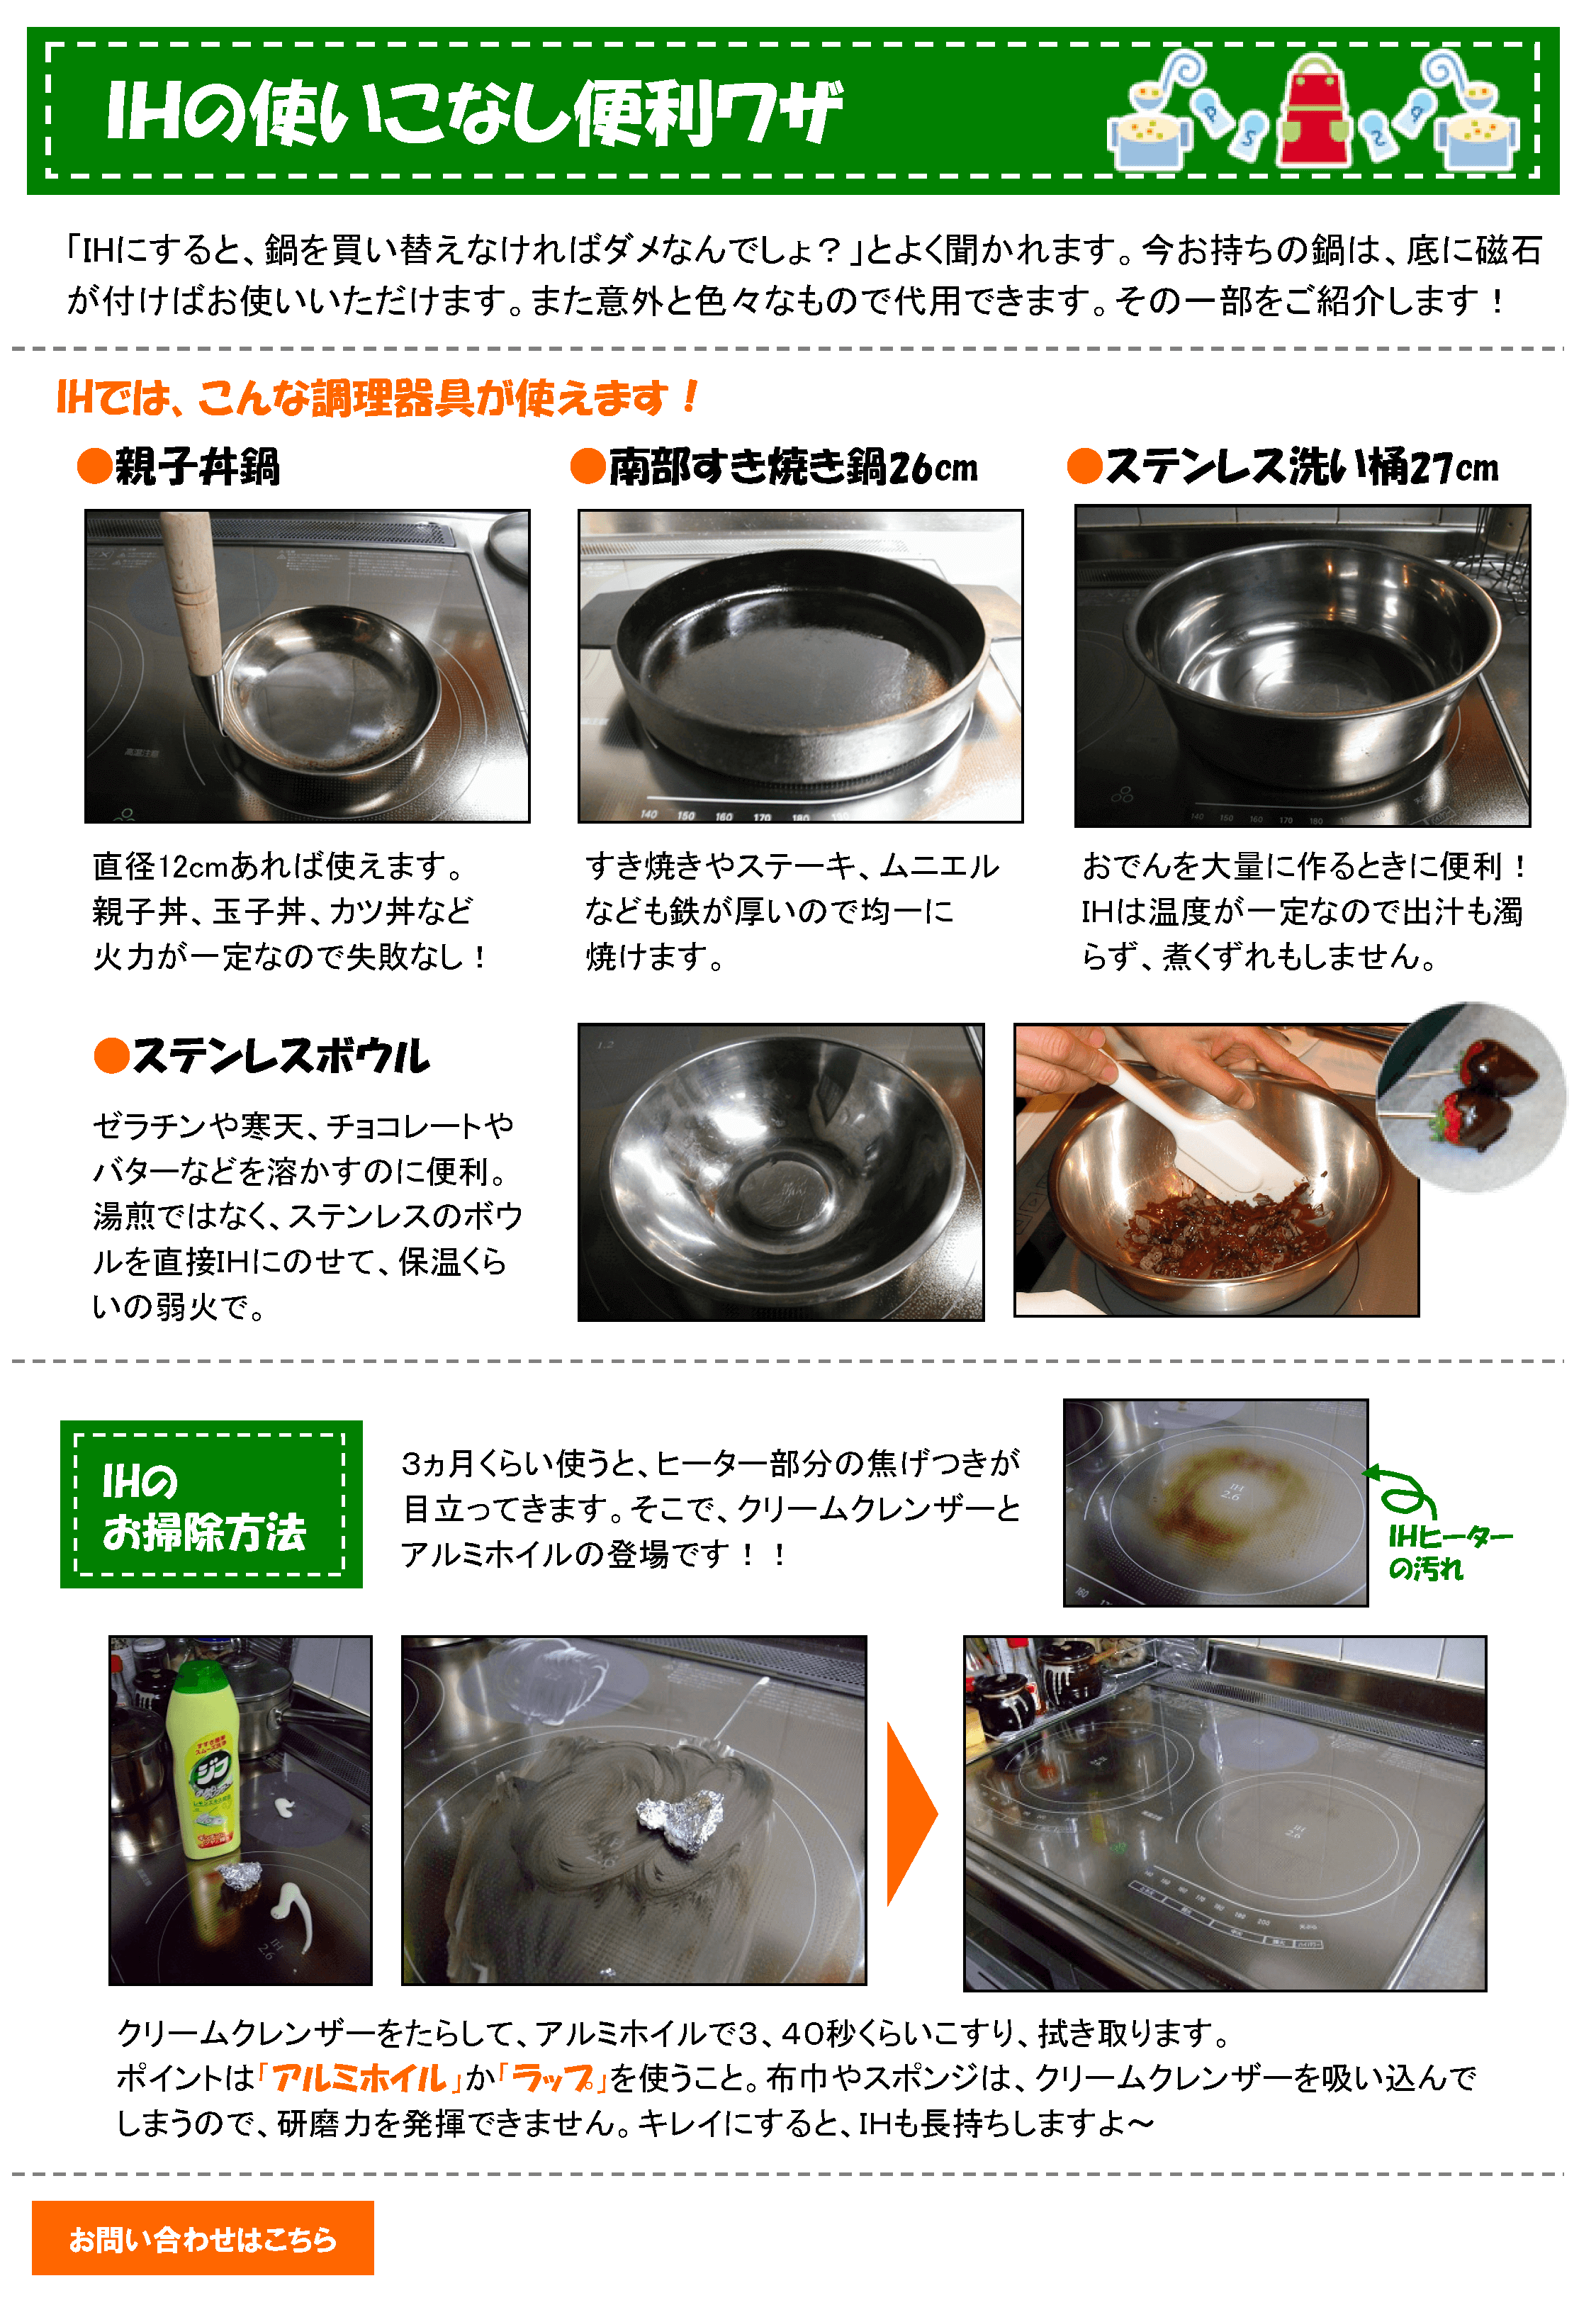 お鍋の使い方＆お掃除提案